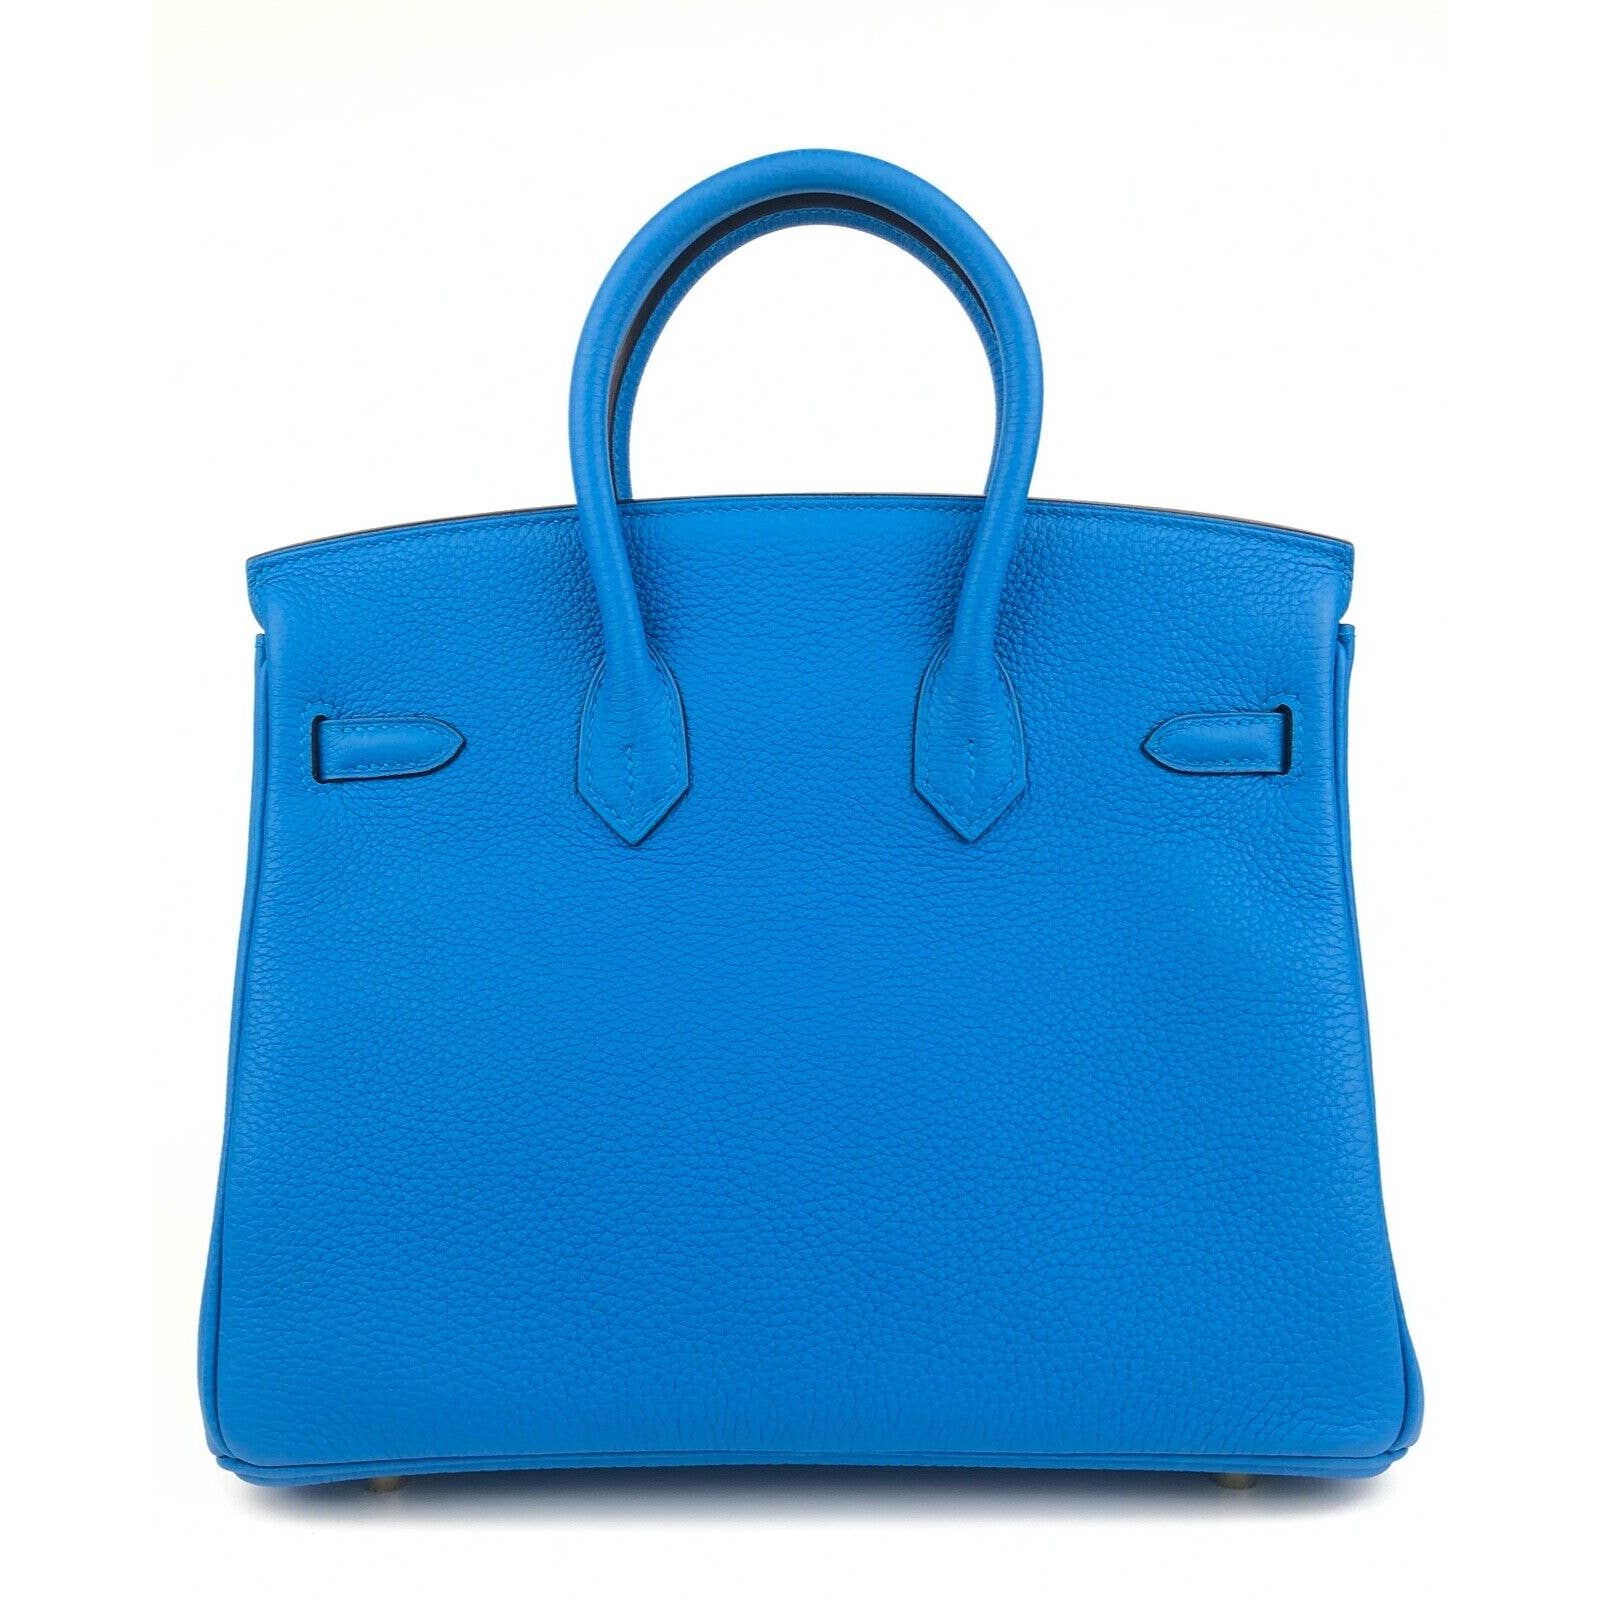 Hermes Blue Zanzibar Togo Gold Hardware Birkin 25 Handbag Bag Tote